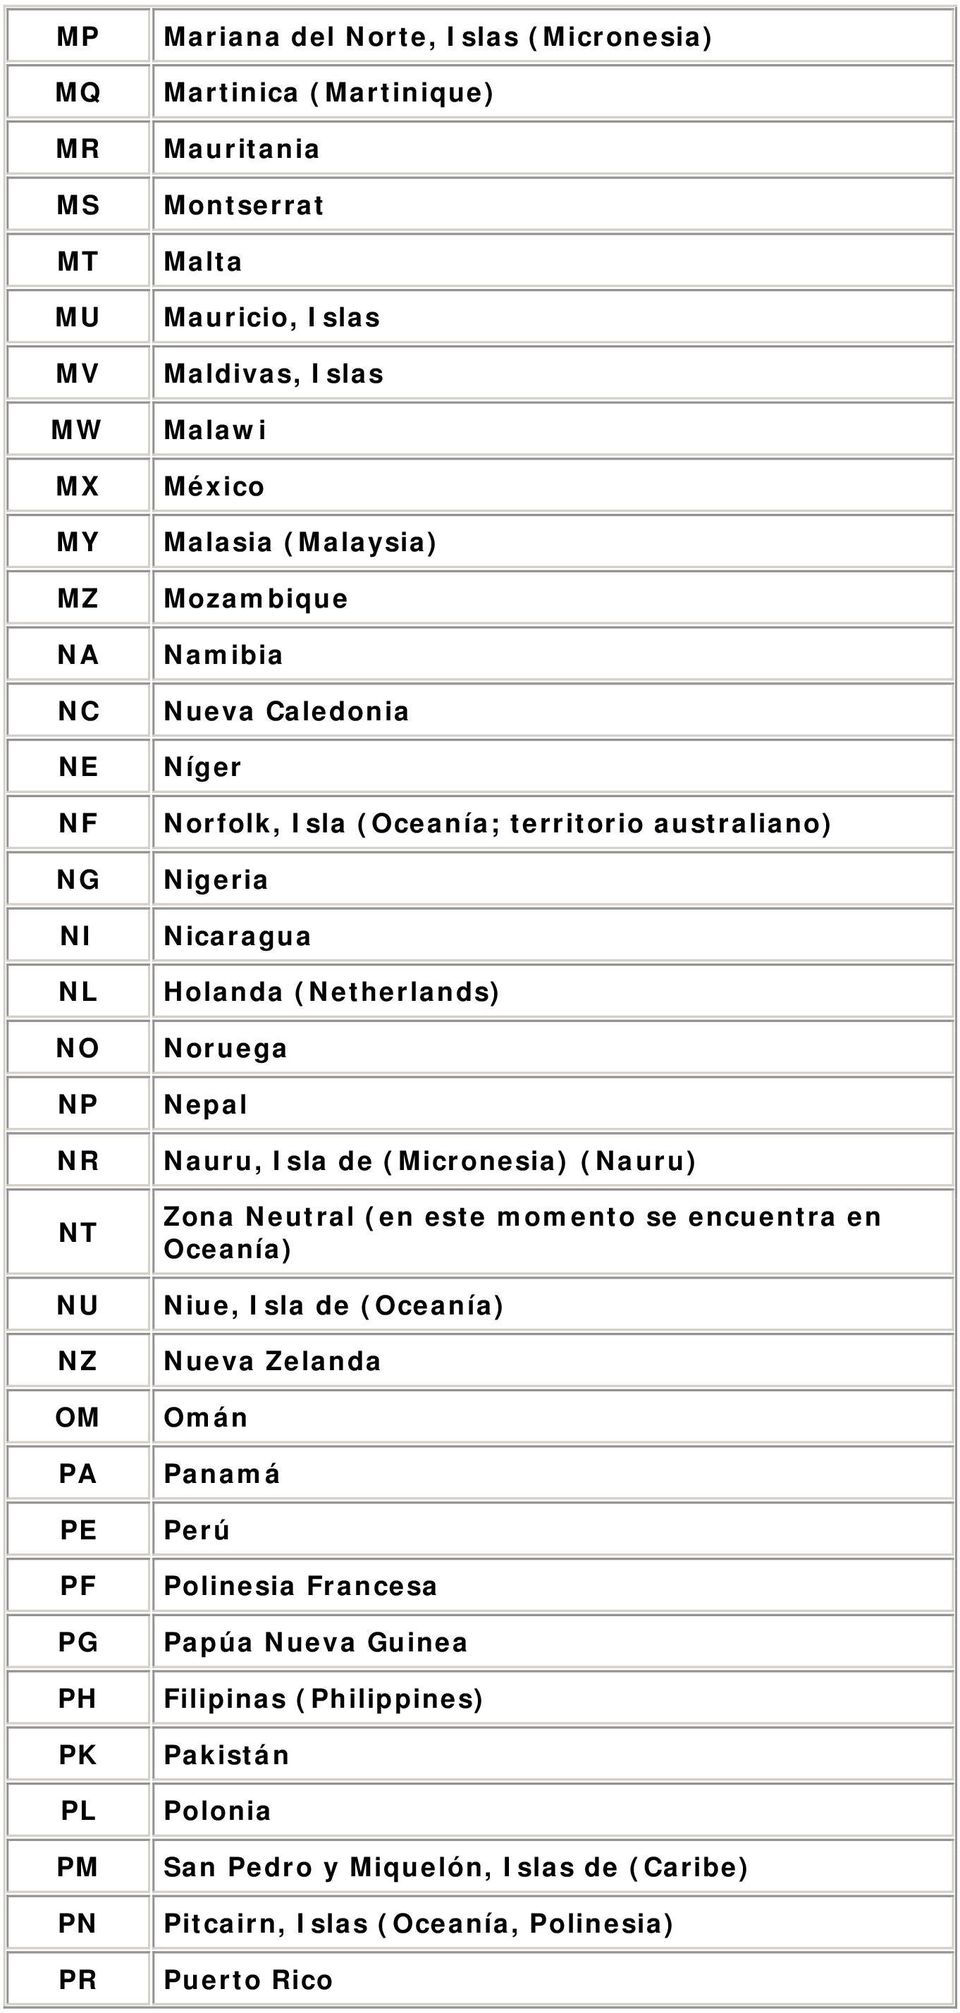 Nicaragua Holanda (Netherlands) Noruega Nepal Nauru, Isla de (Micronesia) (Nauru) Zona Neutral (en este momento se encuentra en Oceanía) Niue, Isla de (Oceanía) Nueva Zelanda